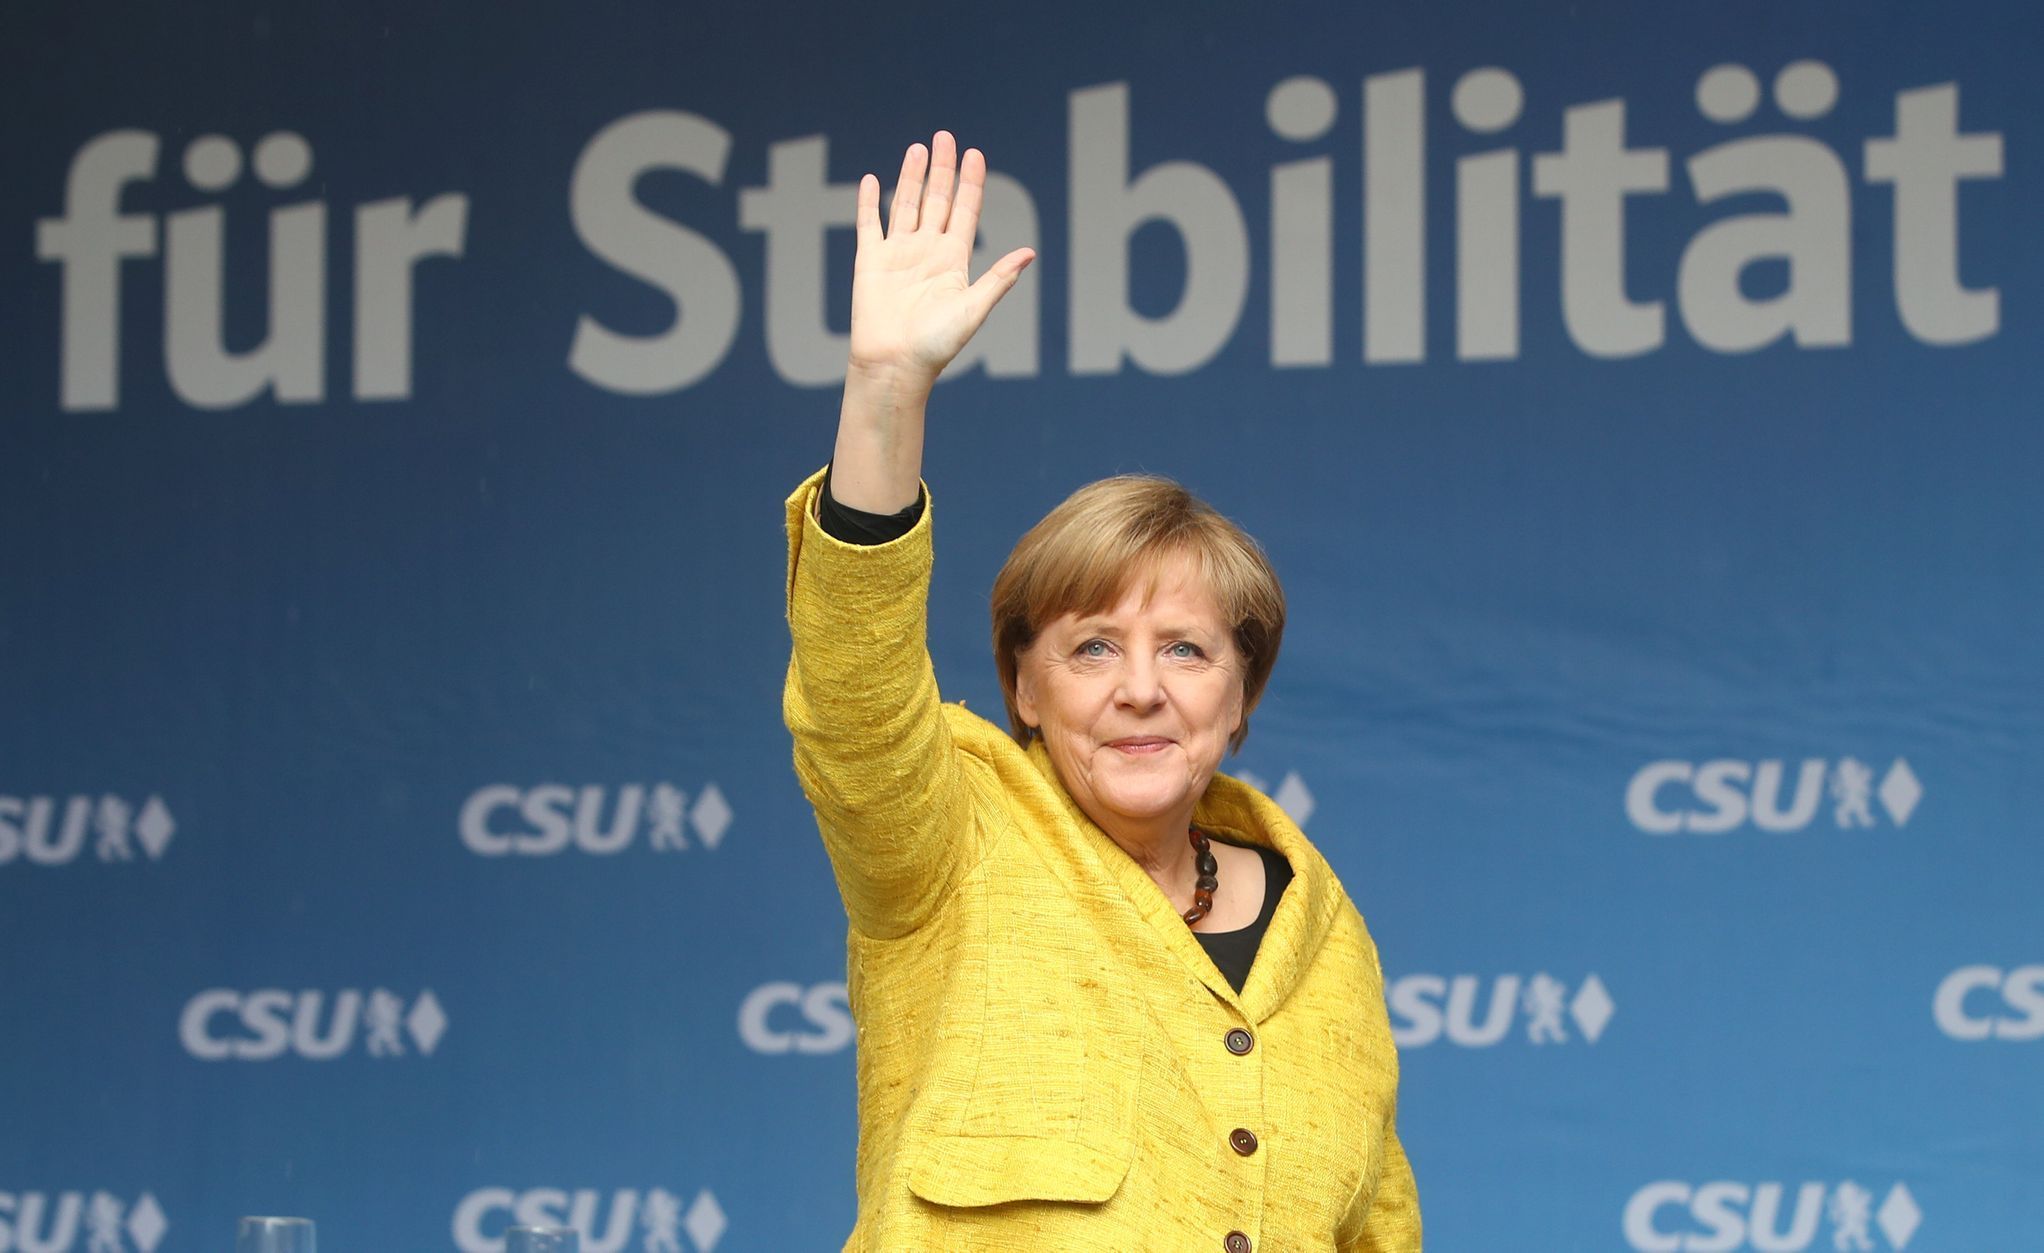 Merkelová kampaň stabilita